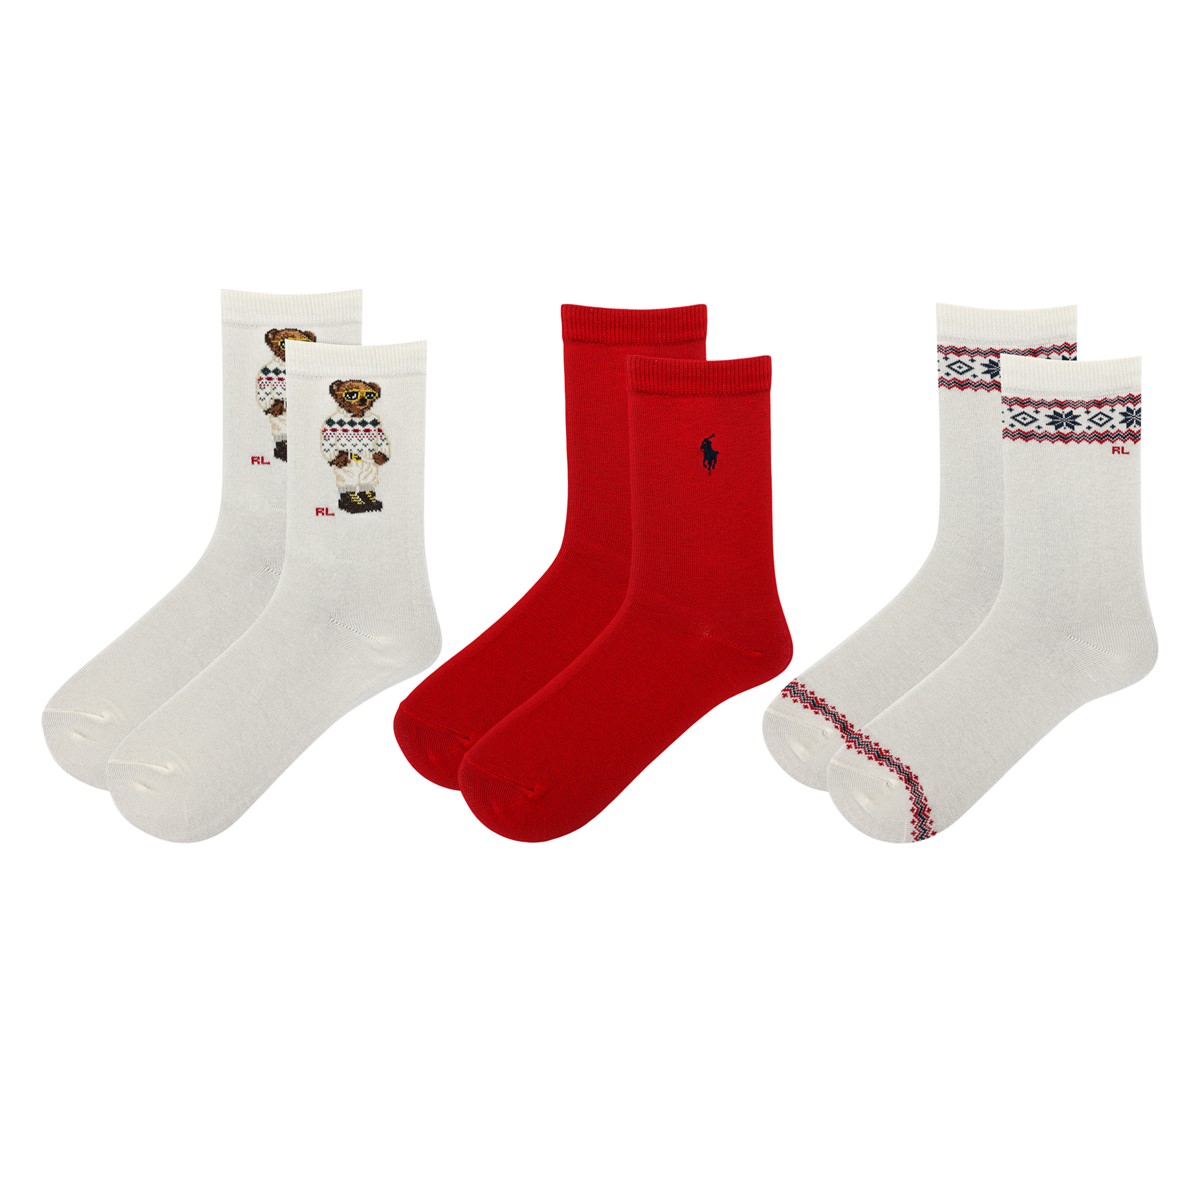 Paquet de 3 paires de chaussettes mi-mollet Polo Aviator Bear ivoire et rouges pour enfants